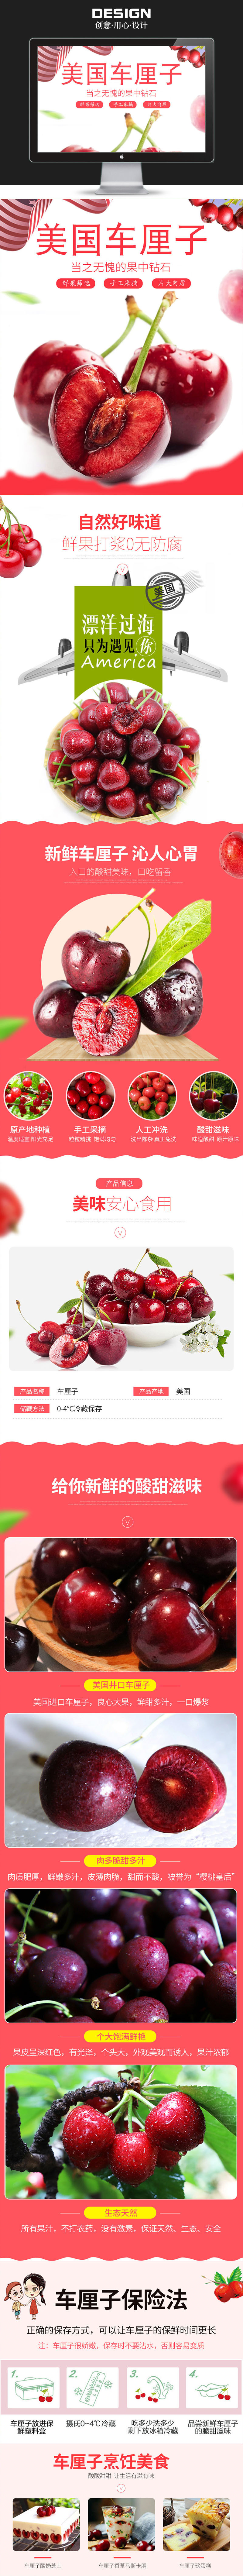 淘宝美工思雨【详情页】清新简约 美味 新鲜水果樱桃作品